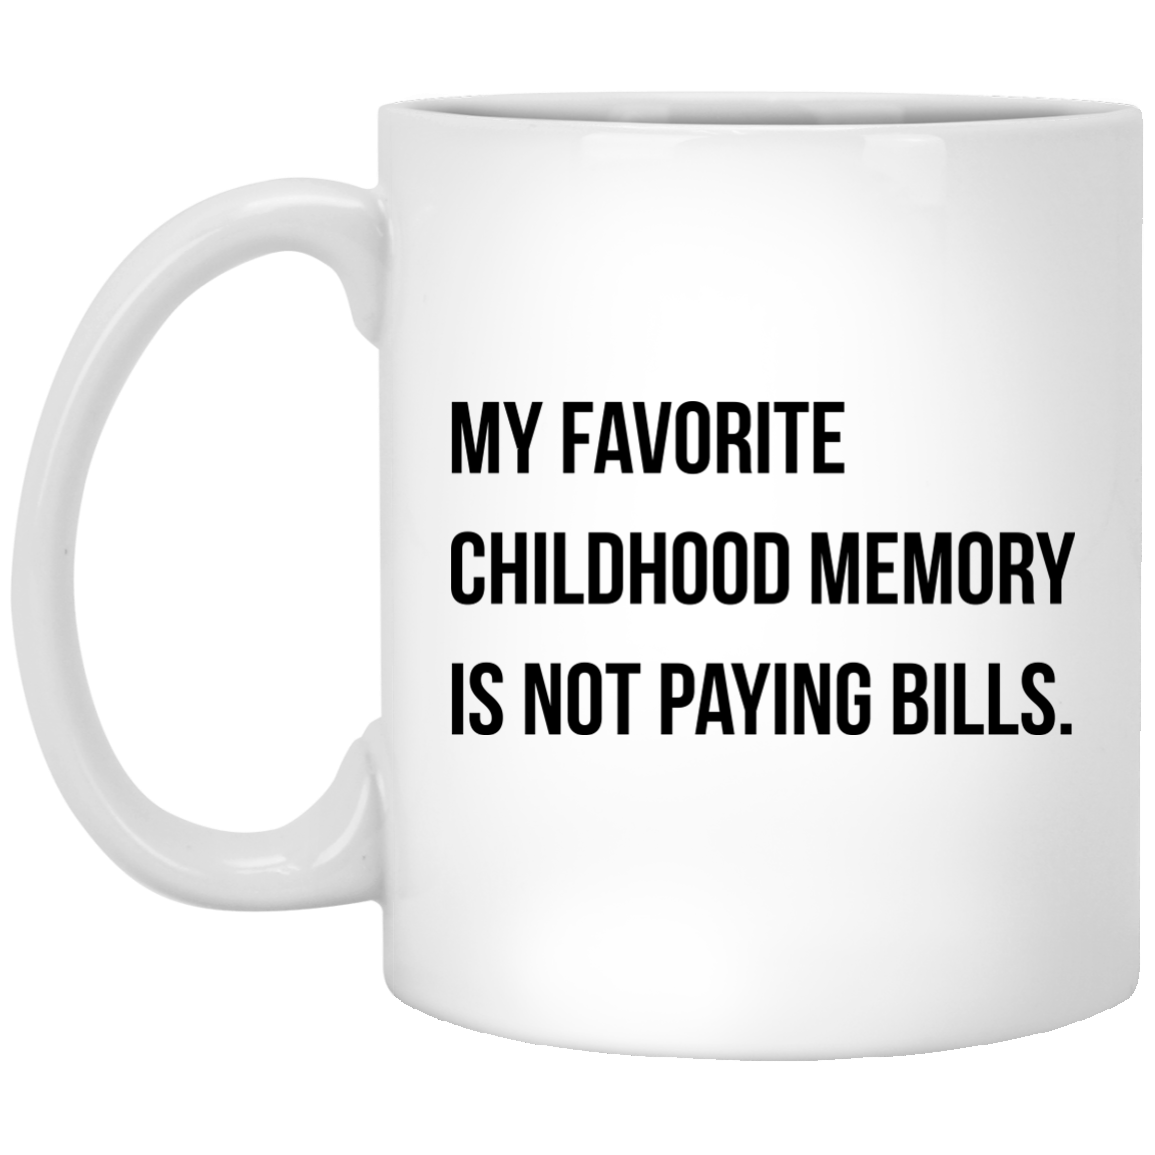 My favorite childhood memory is not paying bills mug